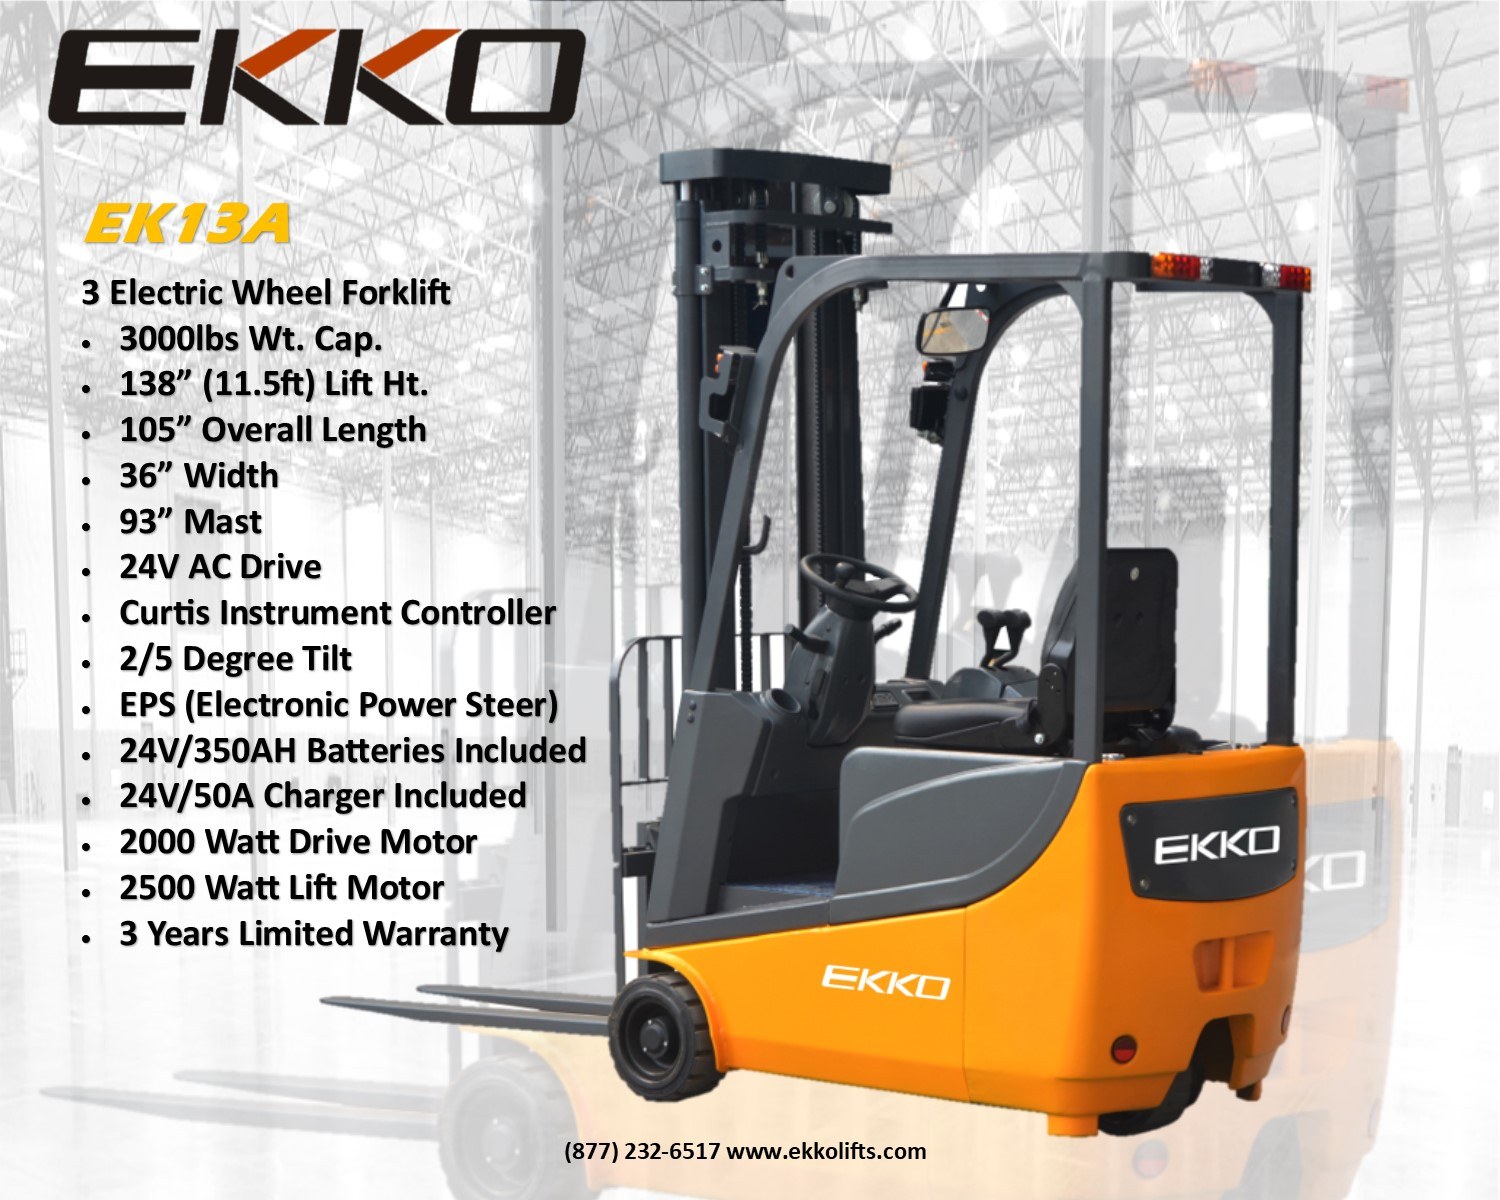 Ekko Ek13a 3 Wheel Forklift Pallet Trucks Cfe Equipment